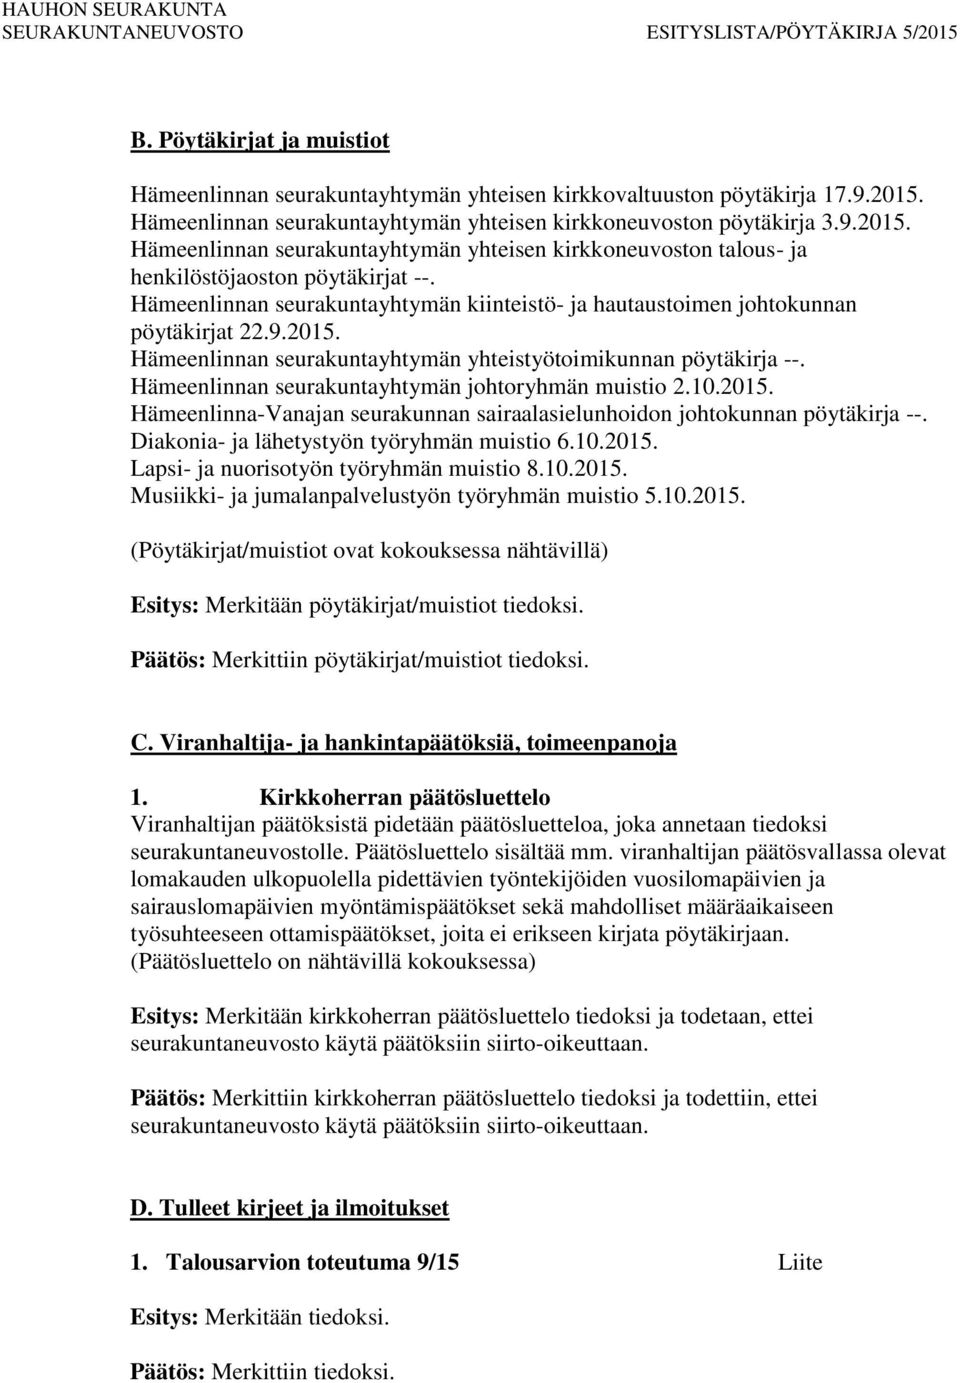 Hämeenlinnan seurakuntayhtymän kiinteistö- ja hautaustoimen johtokunnan pöytäkirjat 22.9.2015. Hämeenlinnan seurakuntayhtymän yhteistyötoimikunnan pöytäkirja --.